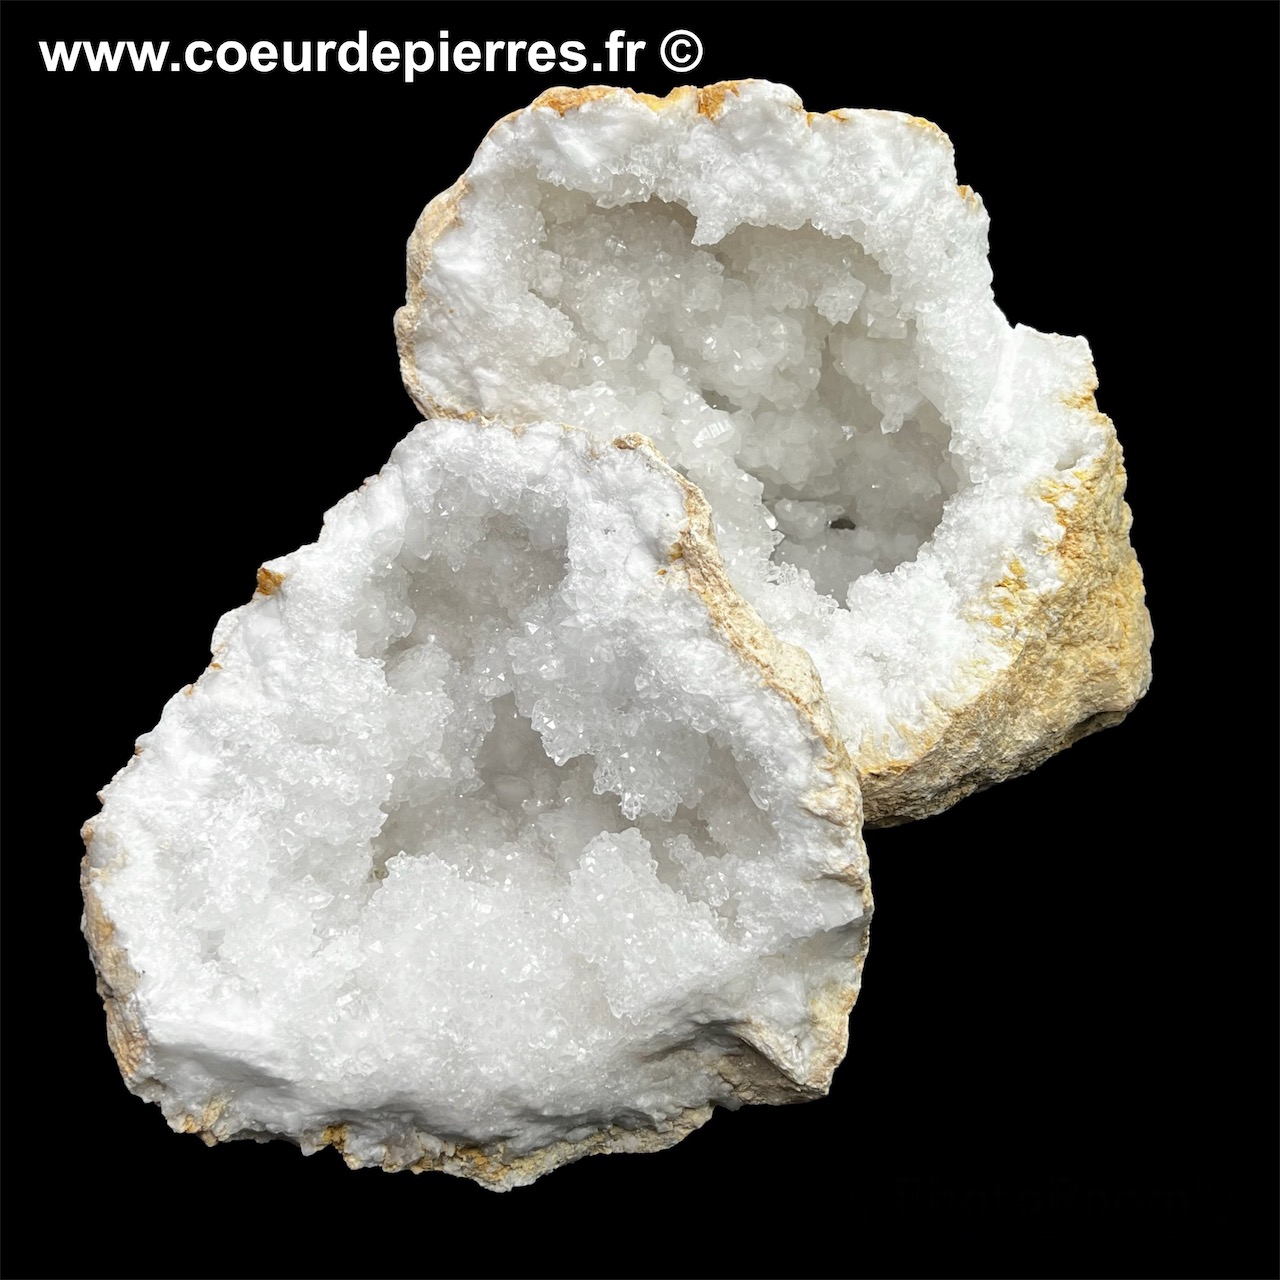 Géode de cristal de roche du Maroc de 10Kg (réf gcr13)